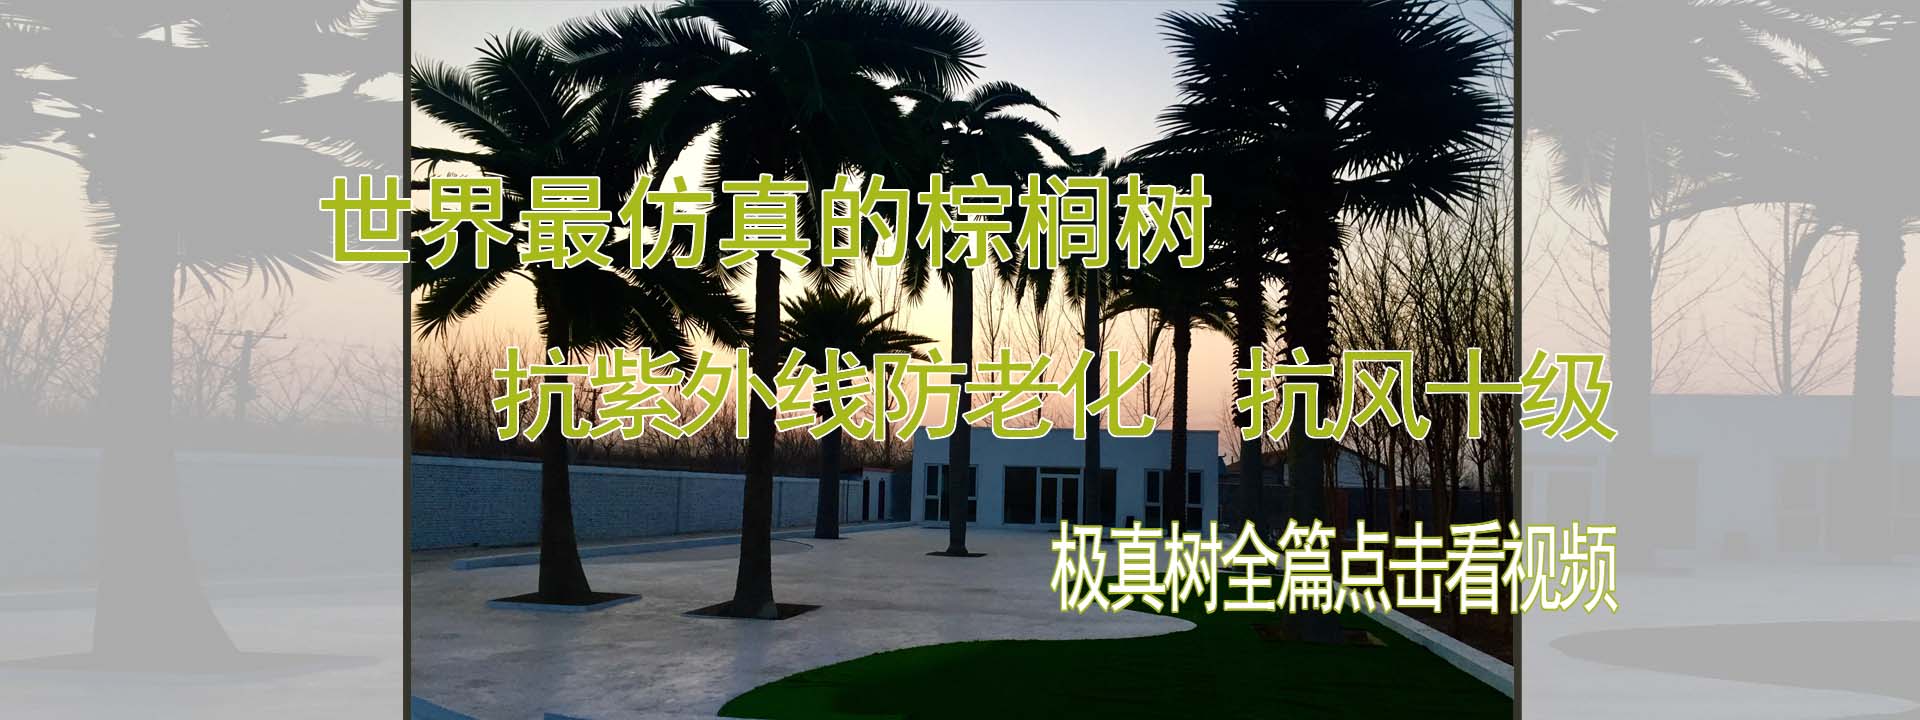 仿真椰子树 仿真棕榈树 仿真海枣树 北京棕榈树技术开发有限公司